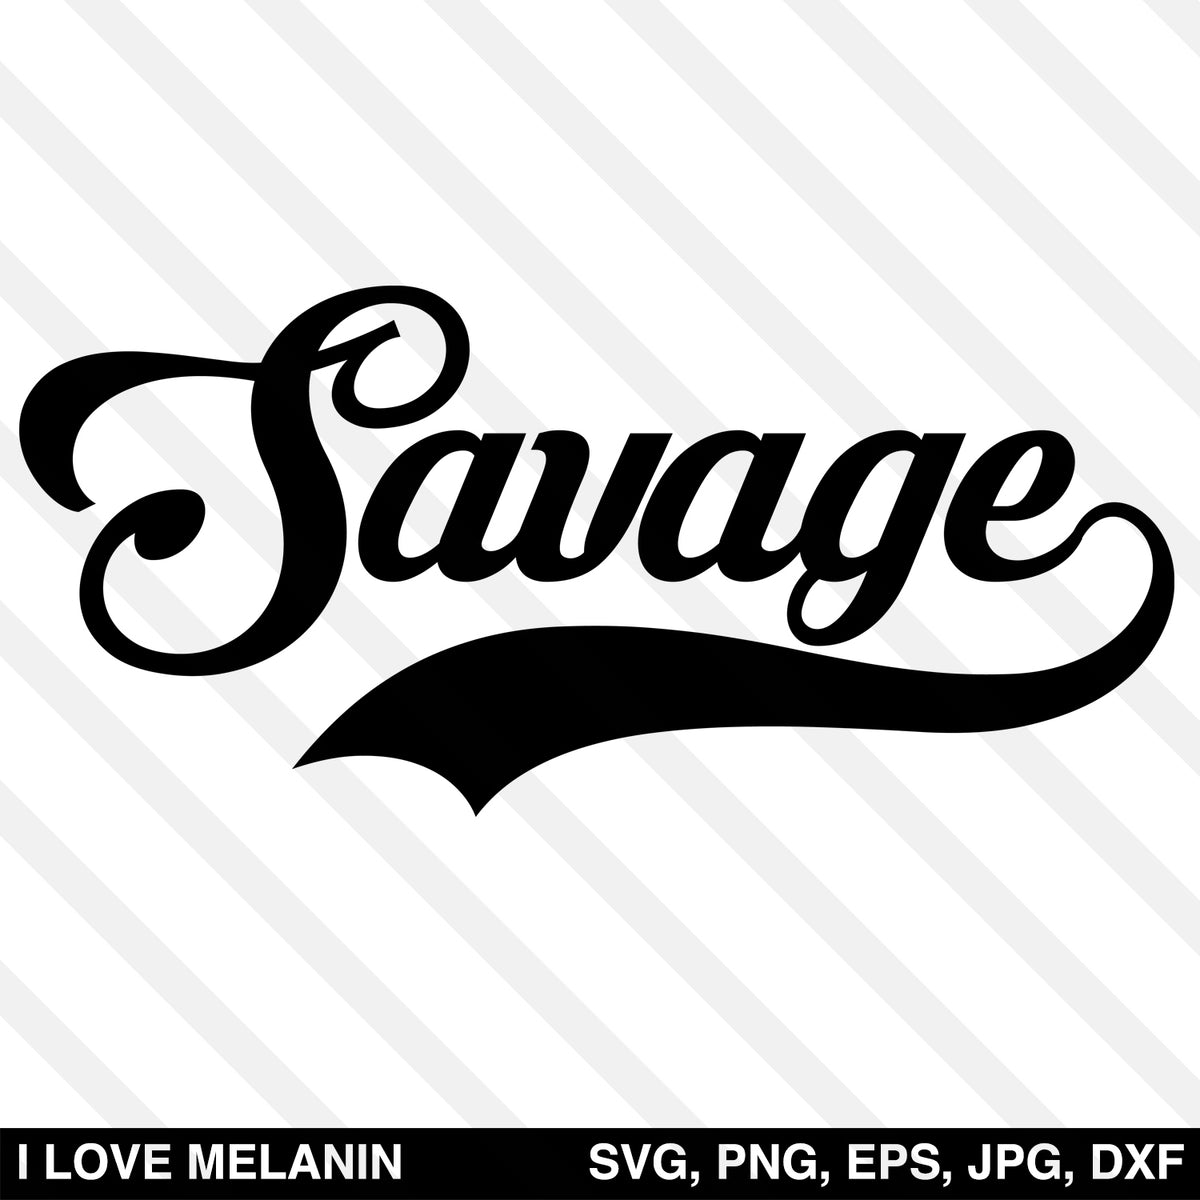 Download Savage Script SVG - I Love Melanin